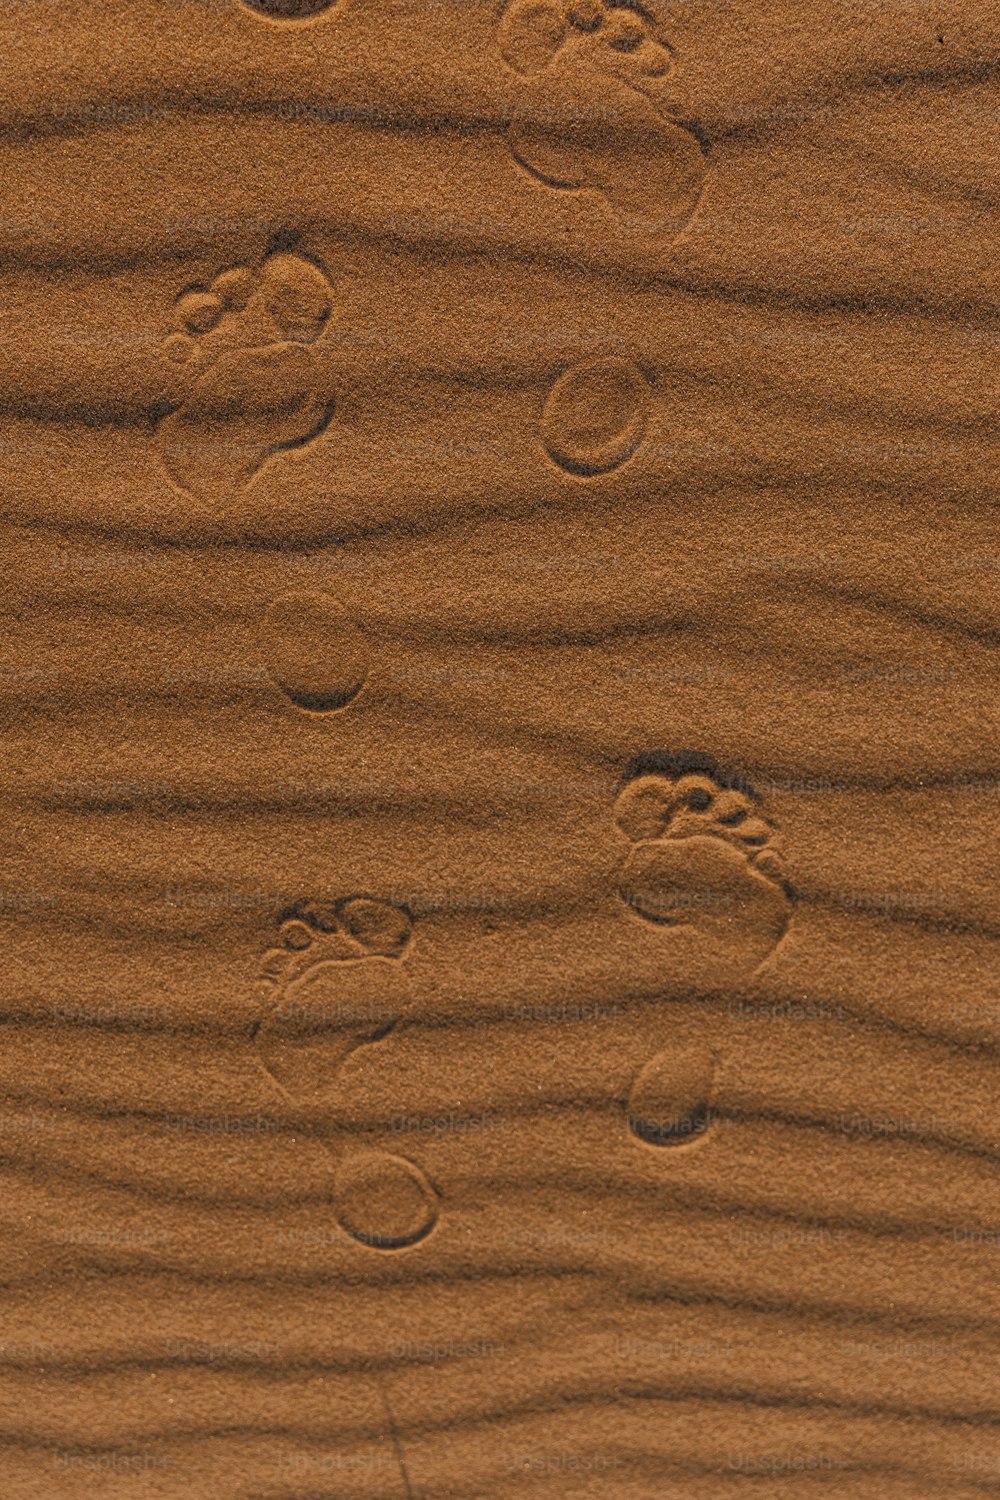 Fußabdrücke im Sand eines Strandes